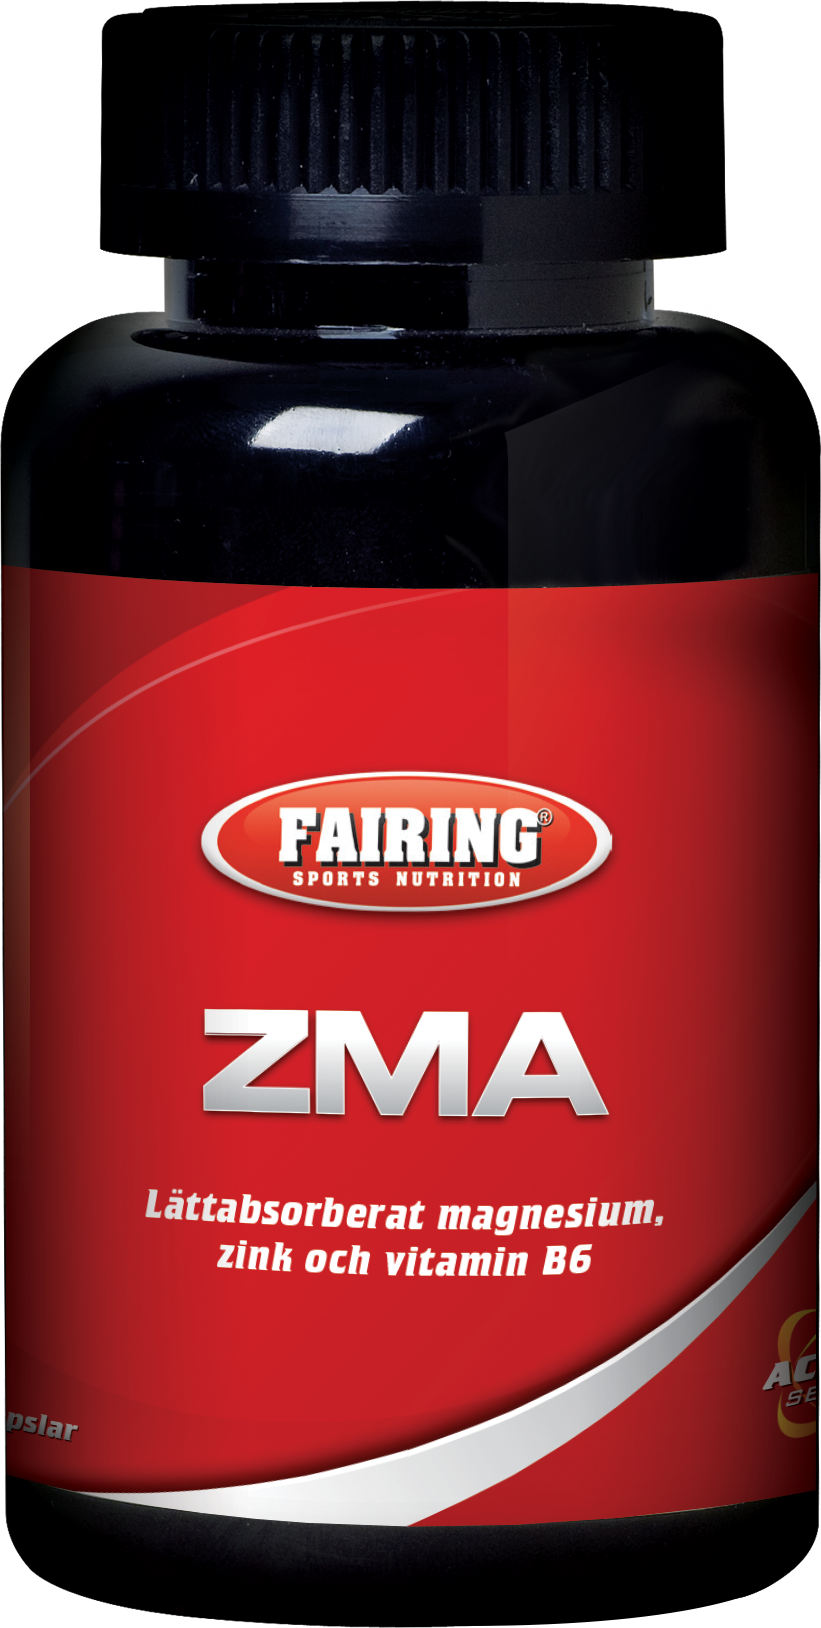 ZMA - Fairing